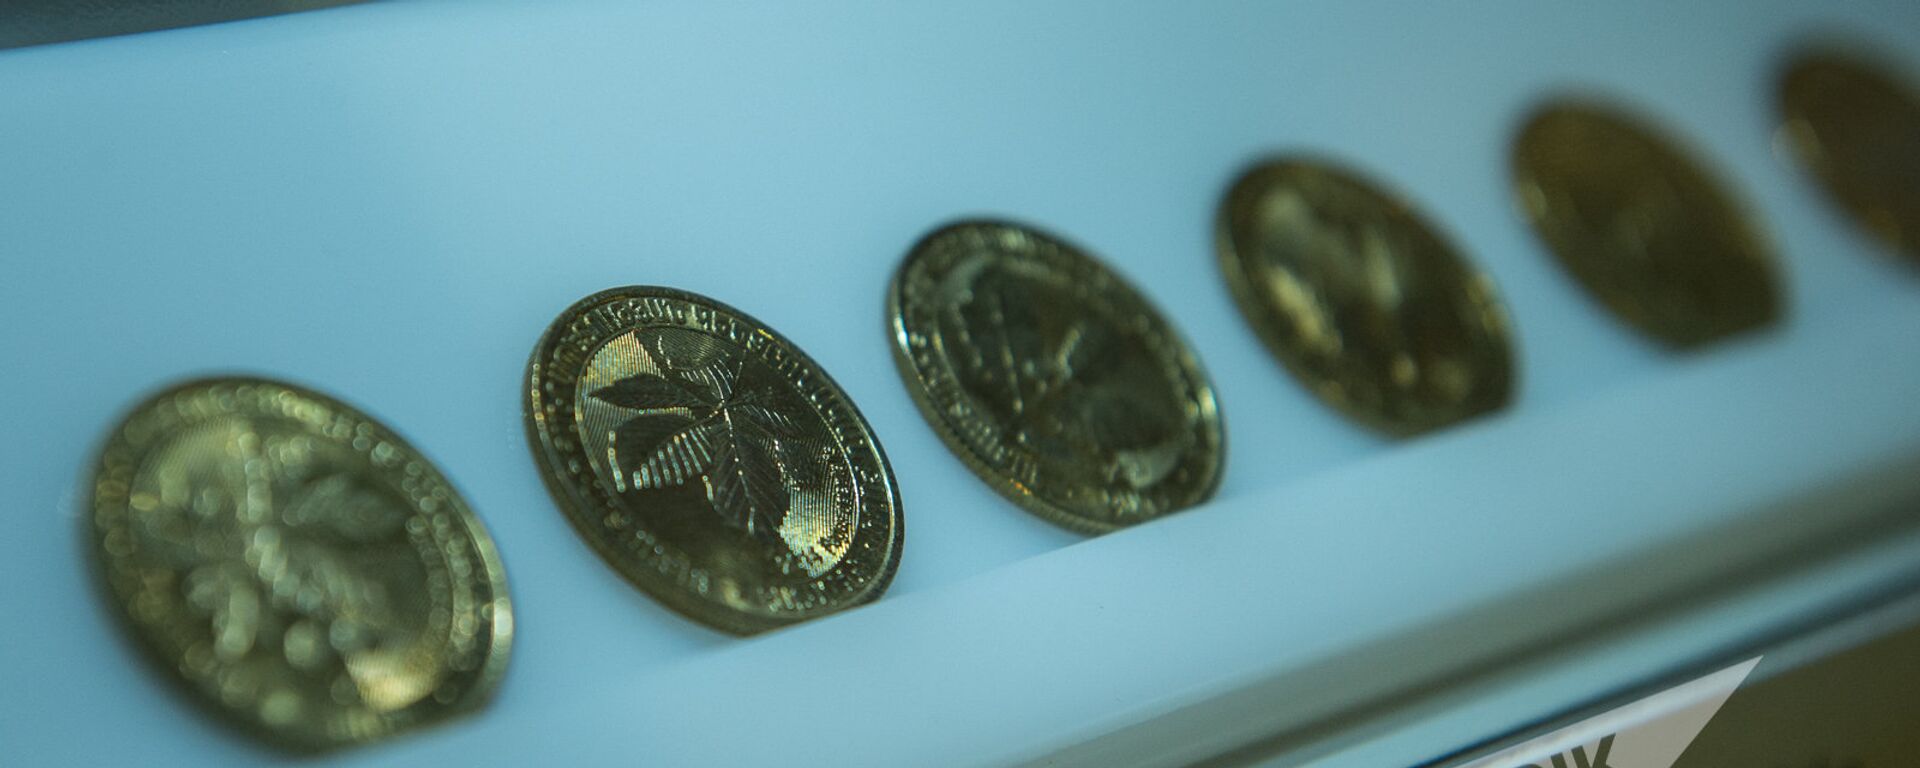 Армянские 200-драммовые монеты - Sputnik Армения, 1920, 12.09.2019